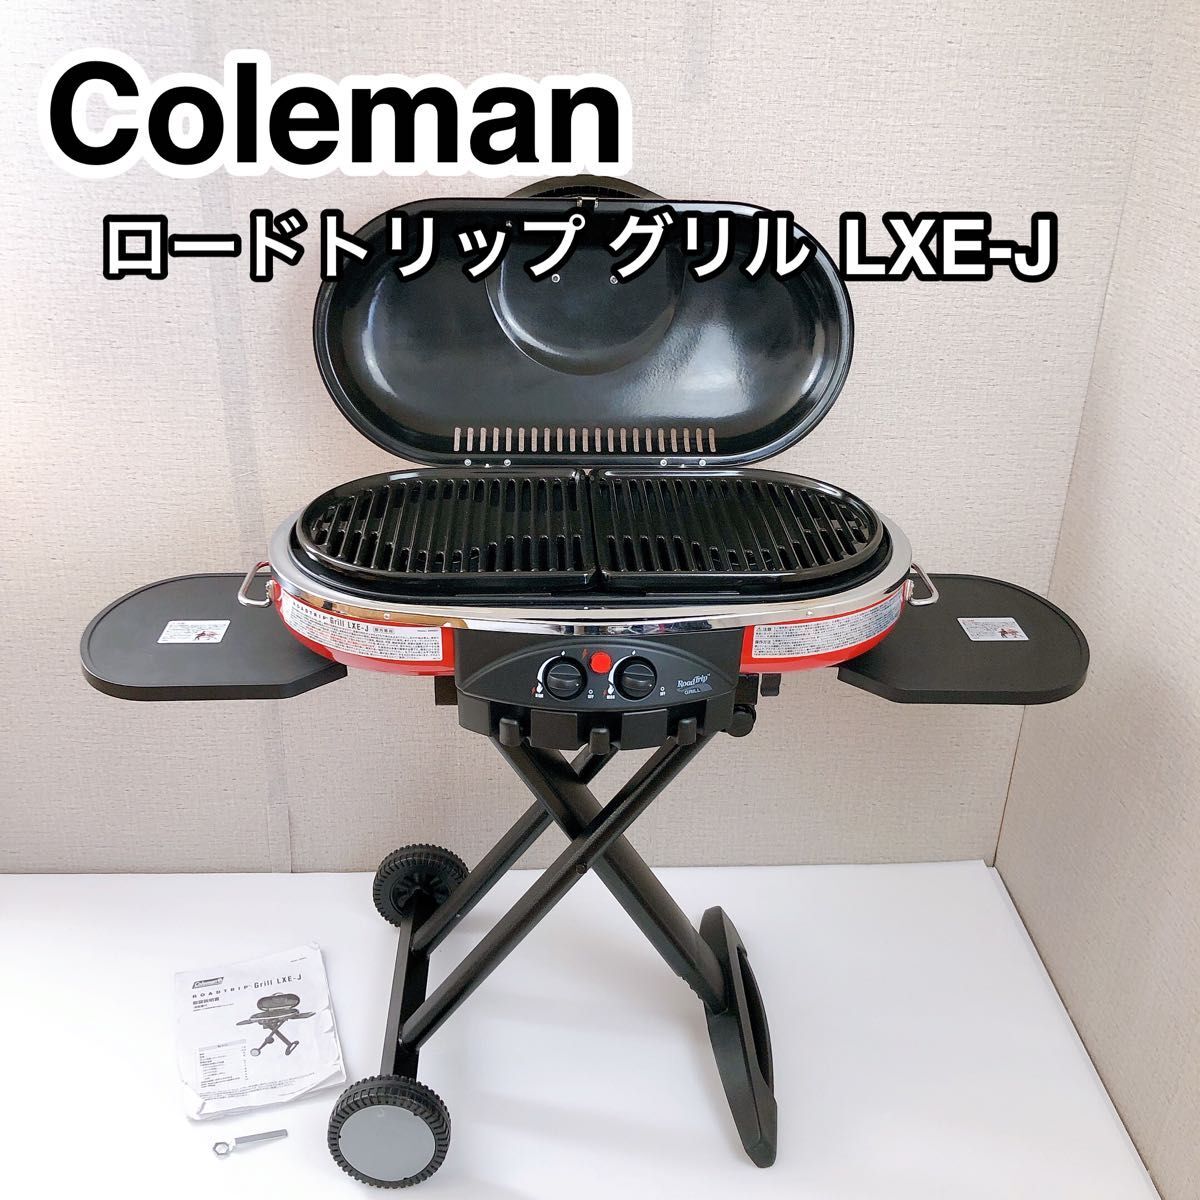 Coleman コールマン ロードトリップグリル LXE-J